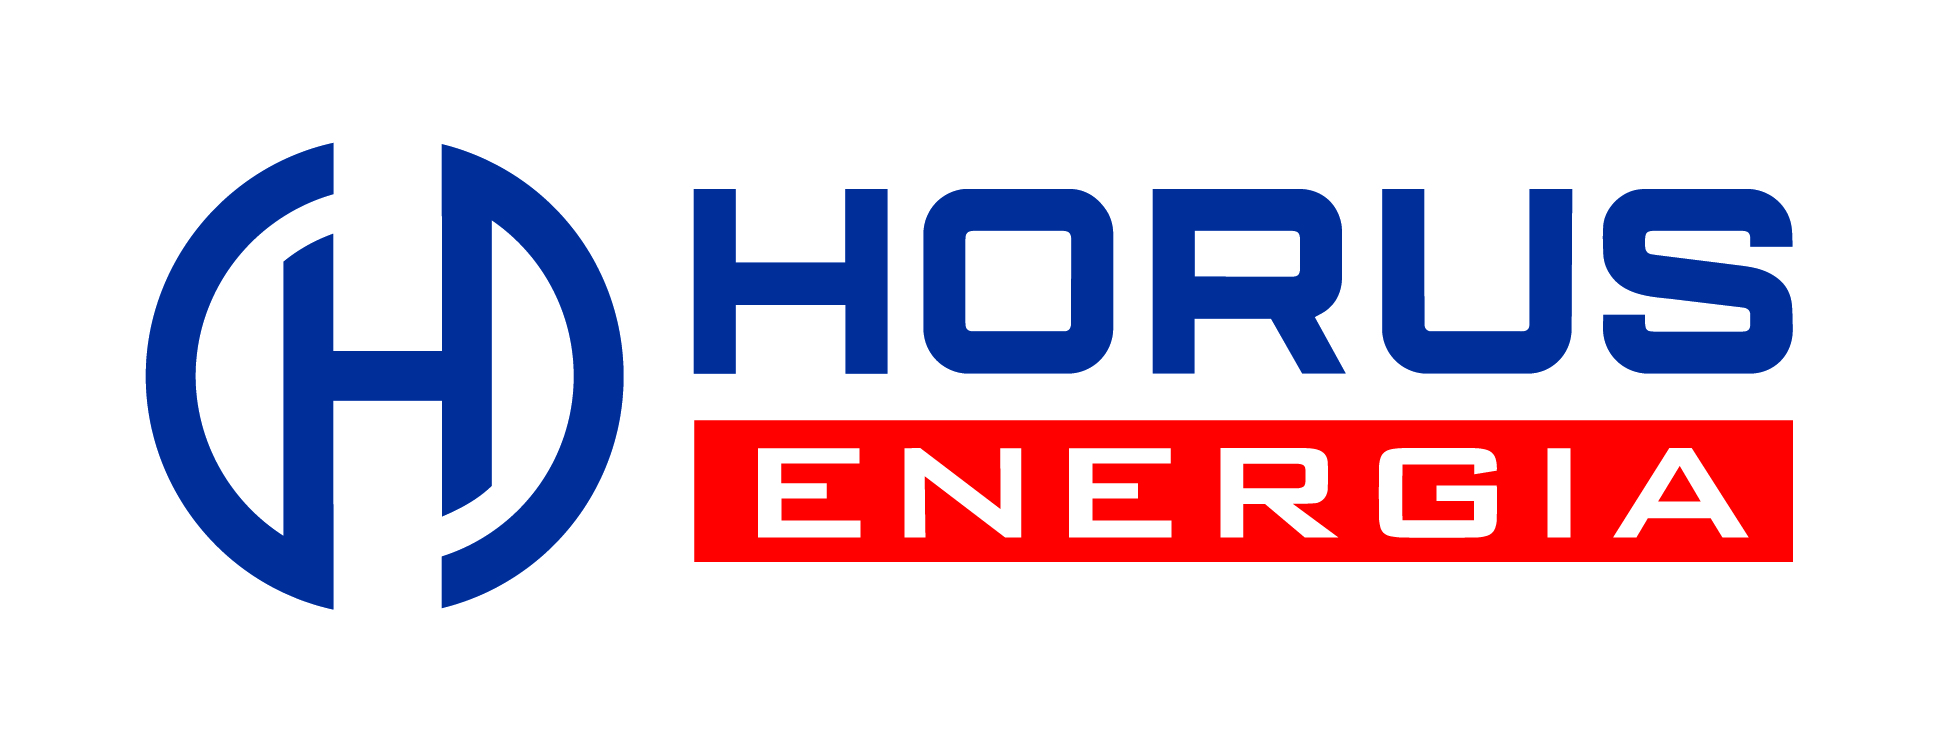 Horus Energia